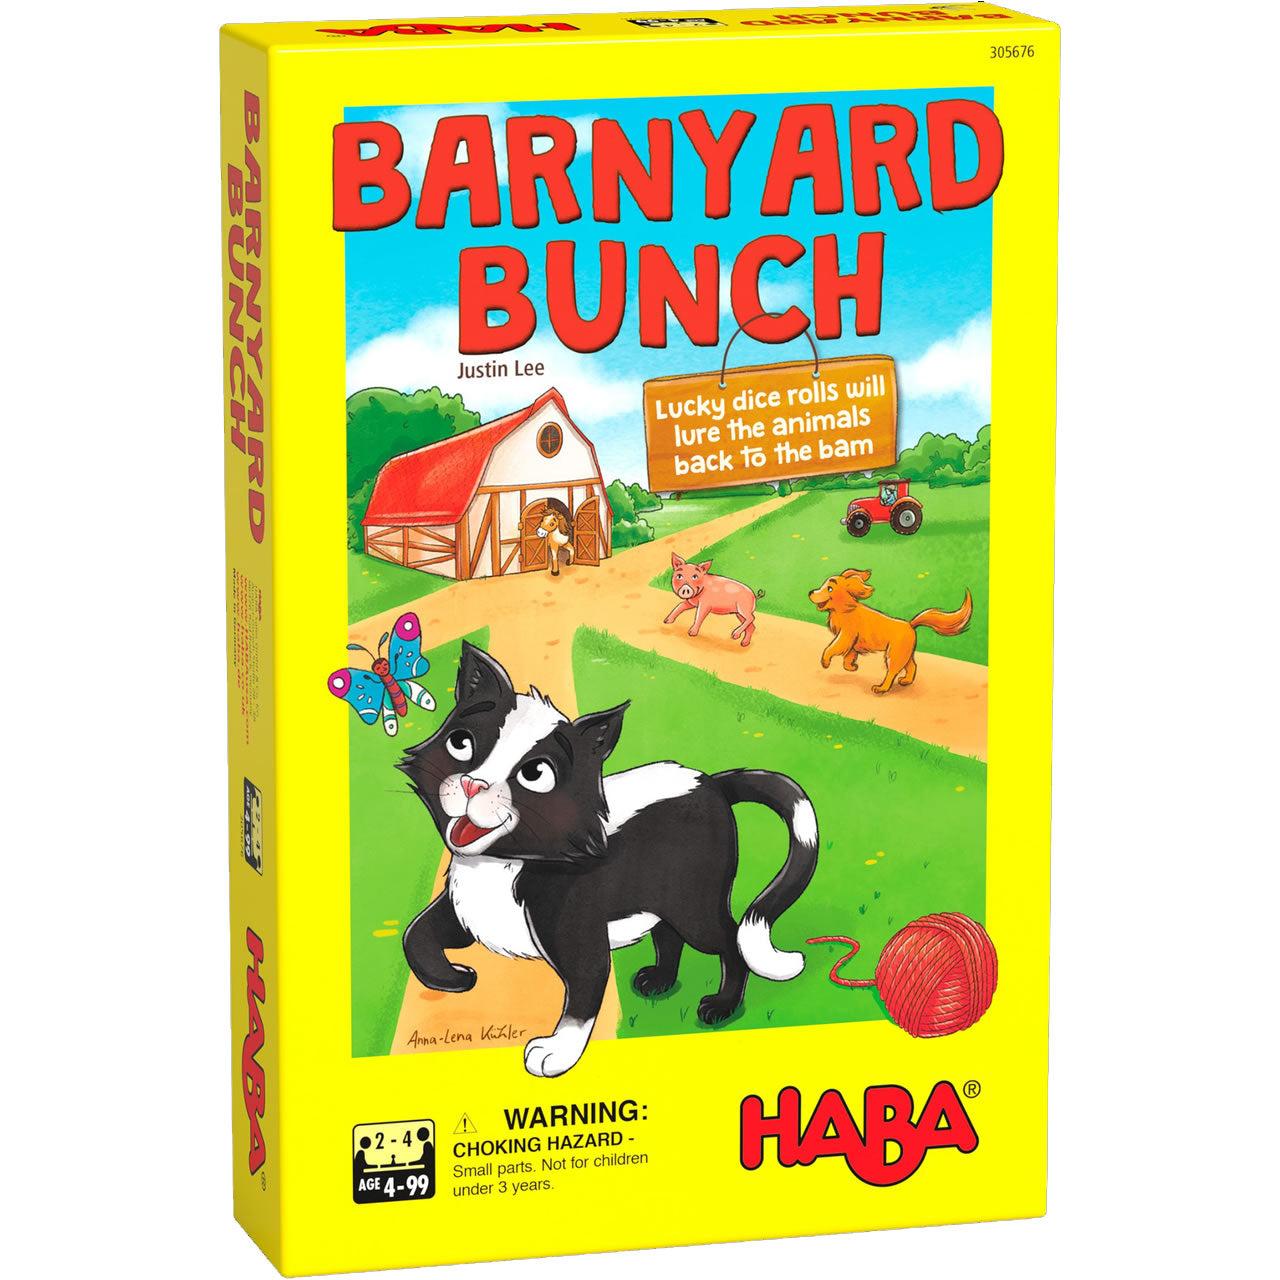 HABA - Barnyard Bunch